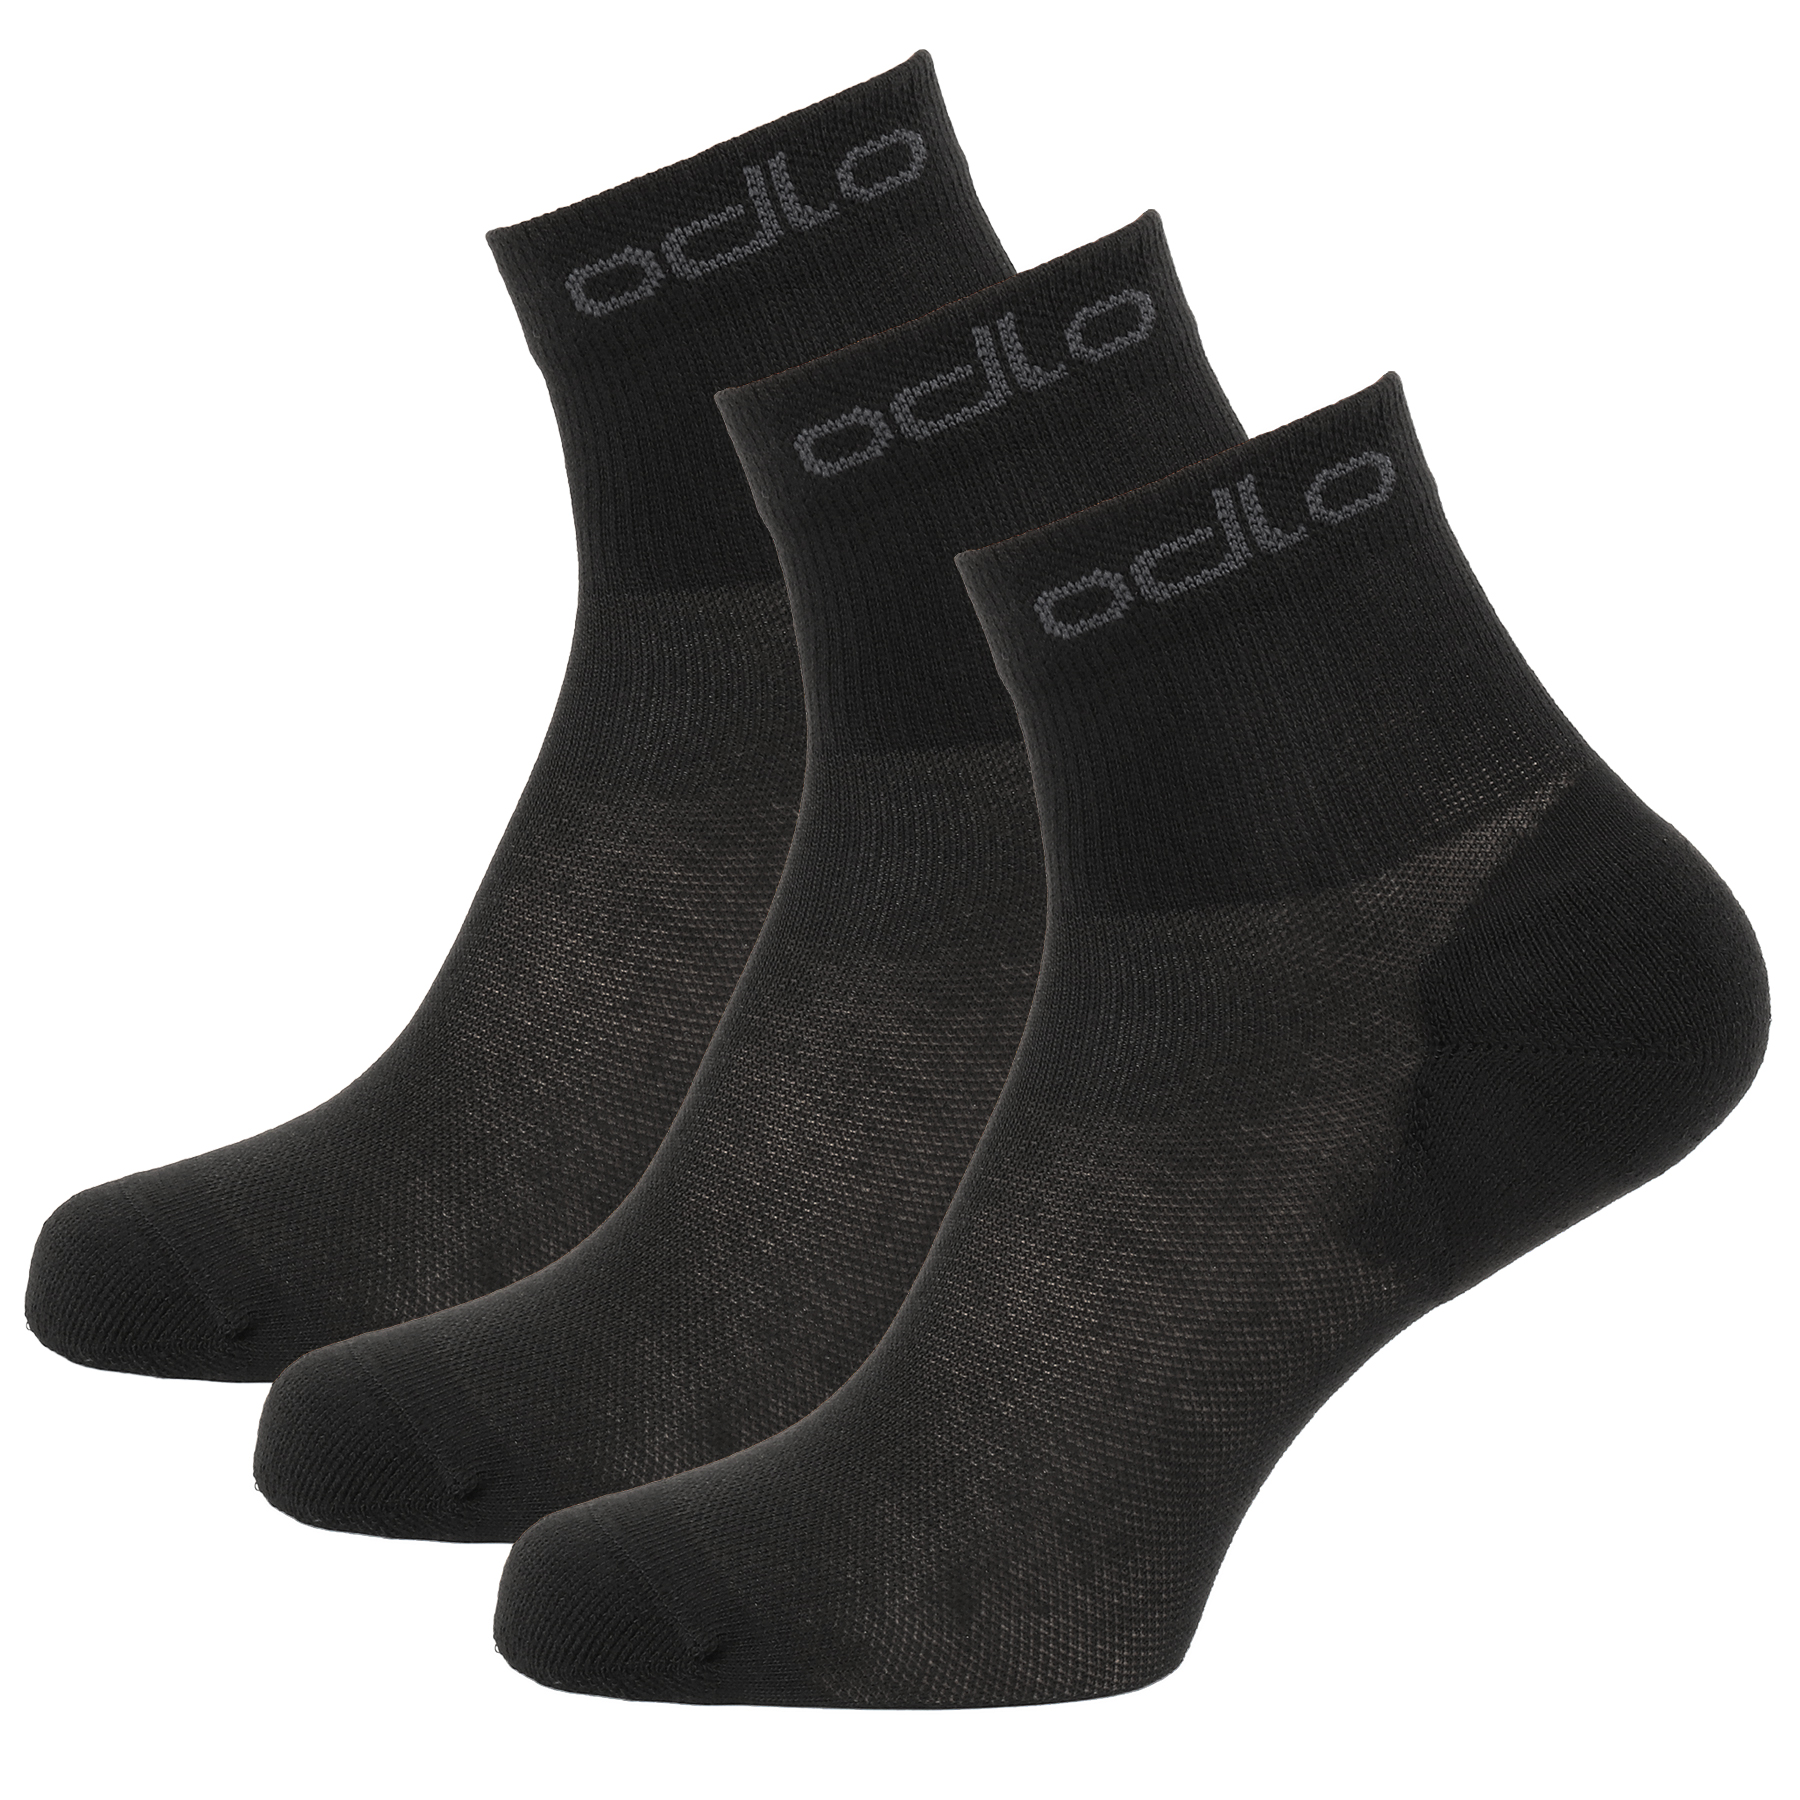 Produktbild von Odlo Active Knöchelsocken - Dreierpack - schwarz